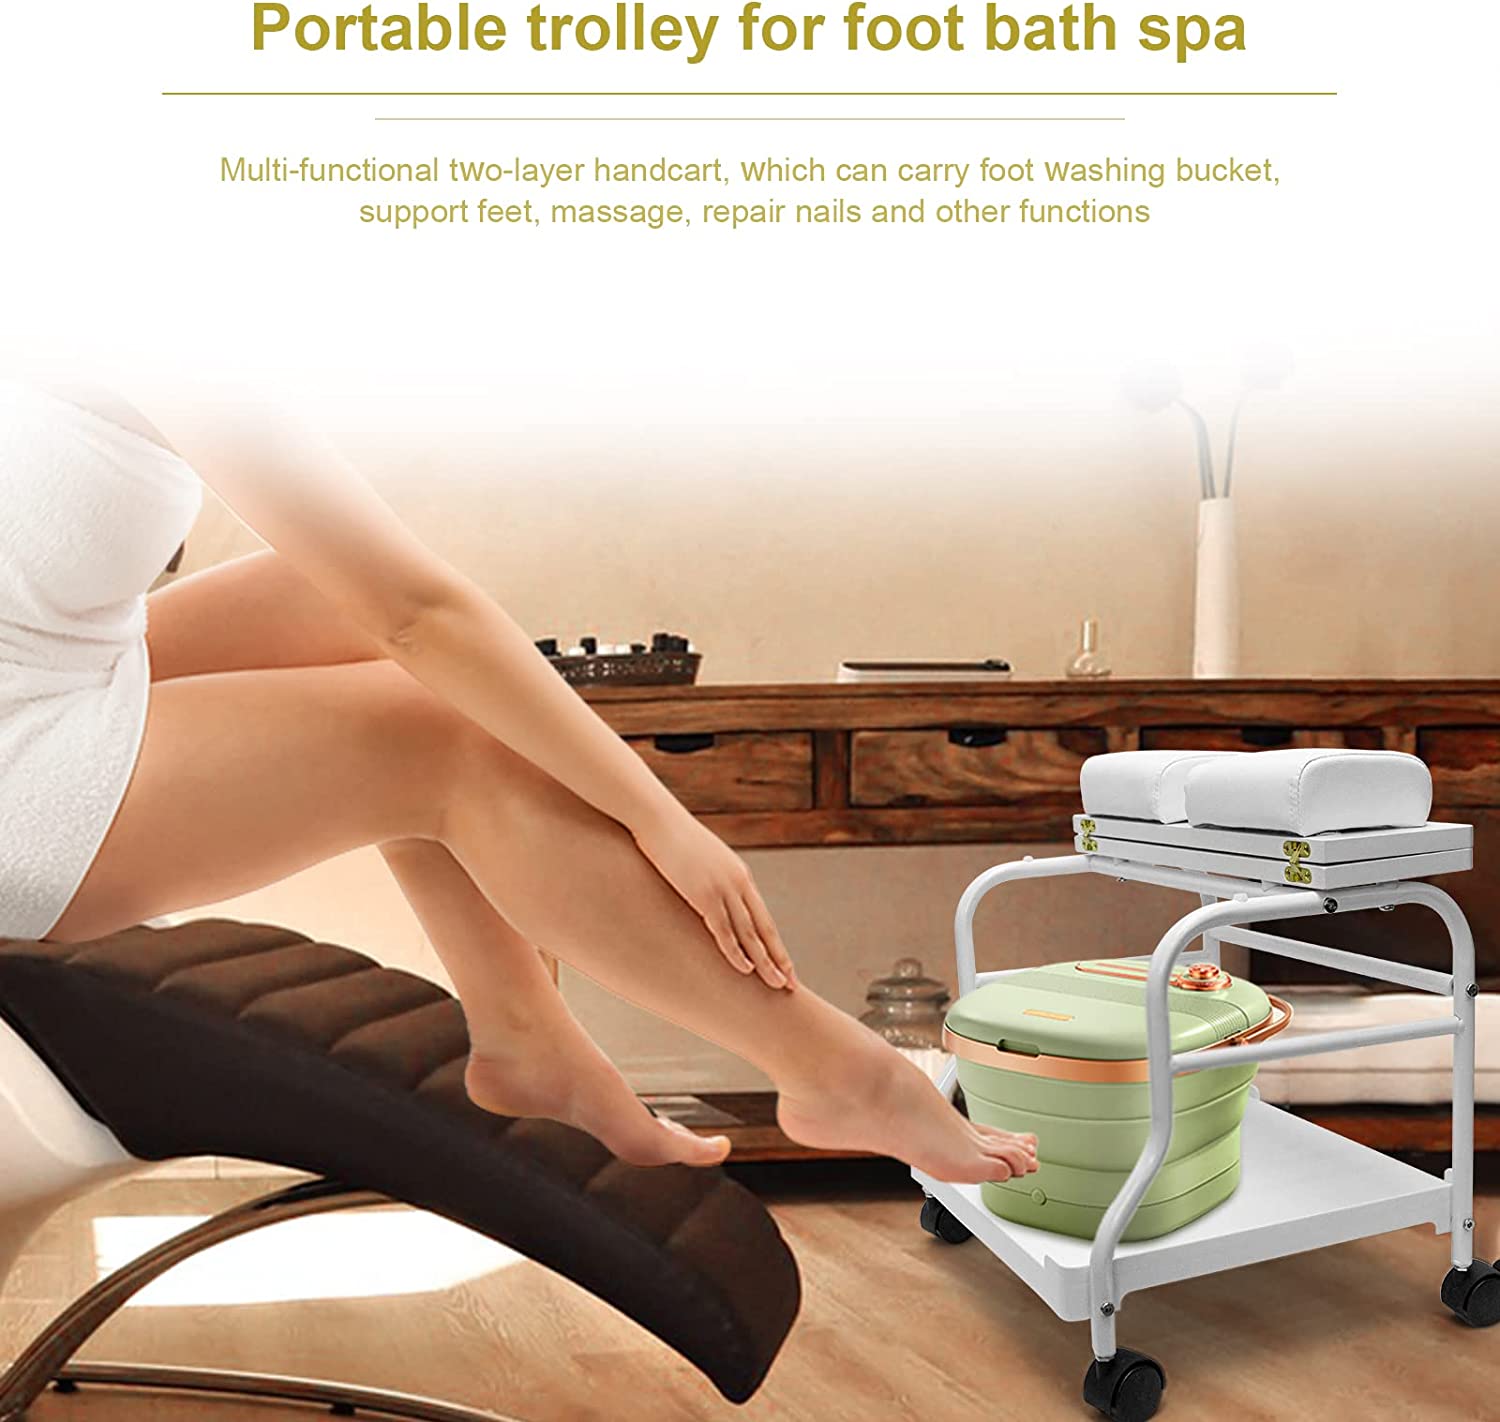 Elitzia etst24 schoonheid salon nagel salon of voetbad spa draagbare trolley kar voor voet rust of pedicure